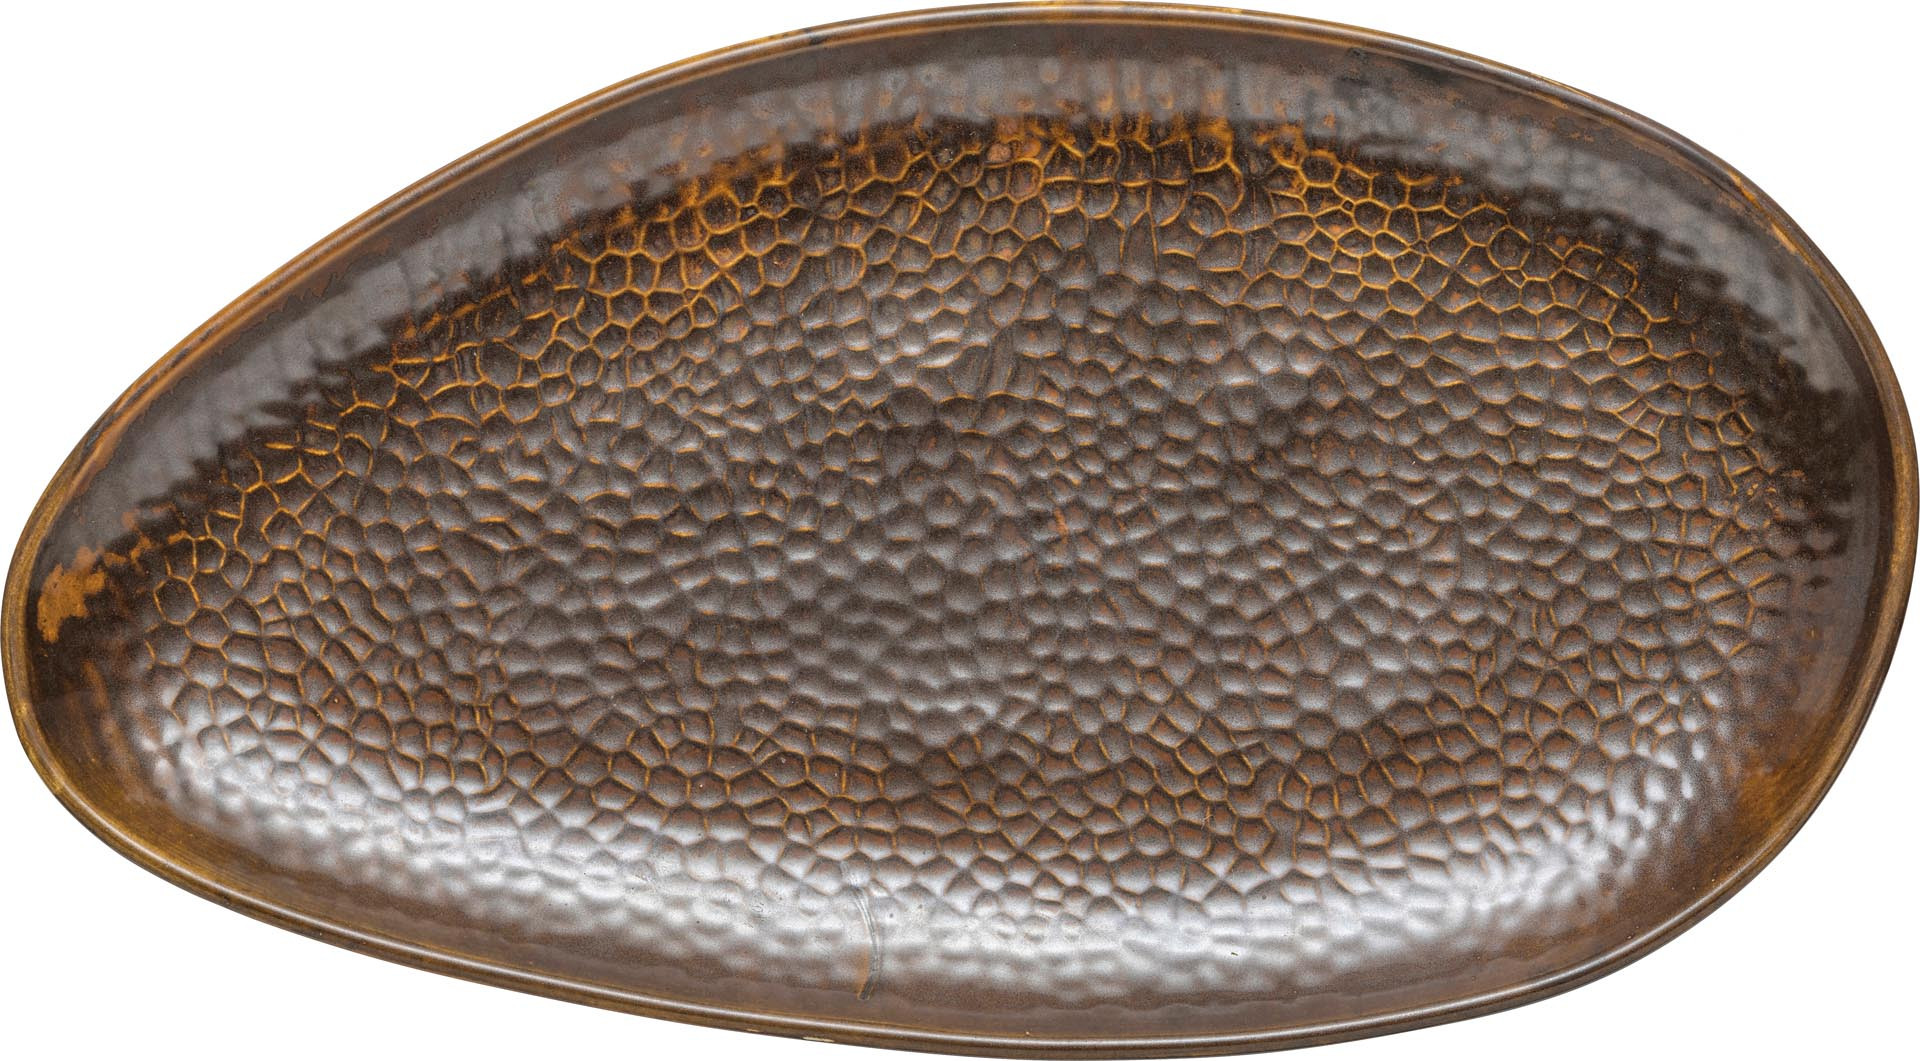 Porzellanserie "Rusty" Platte flach oval 38x21cm